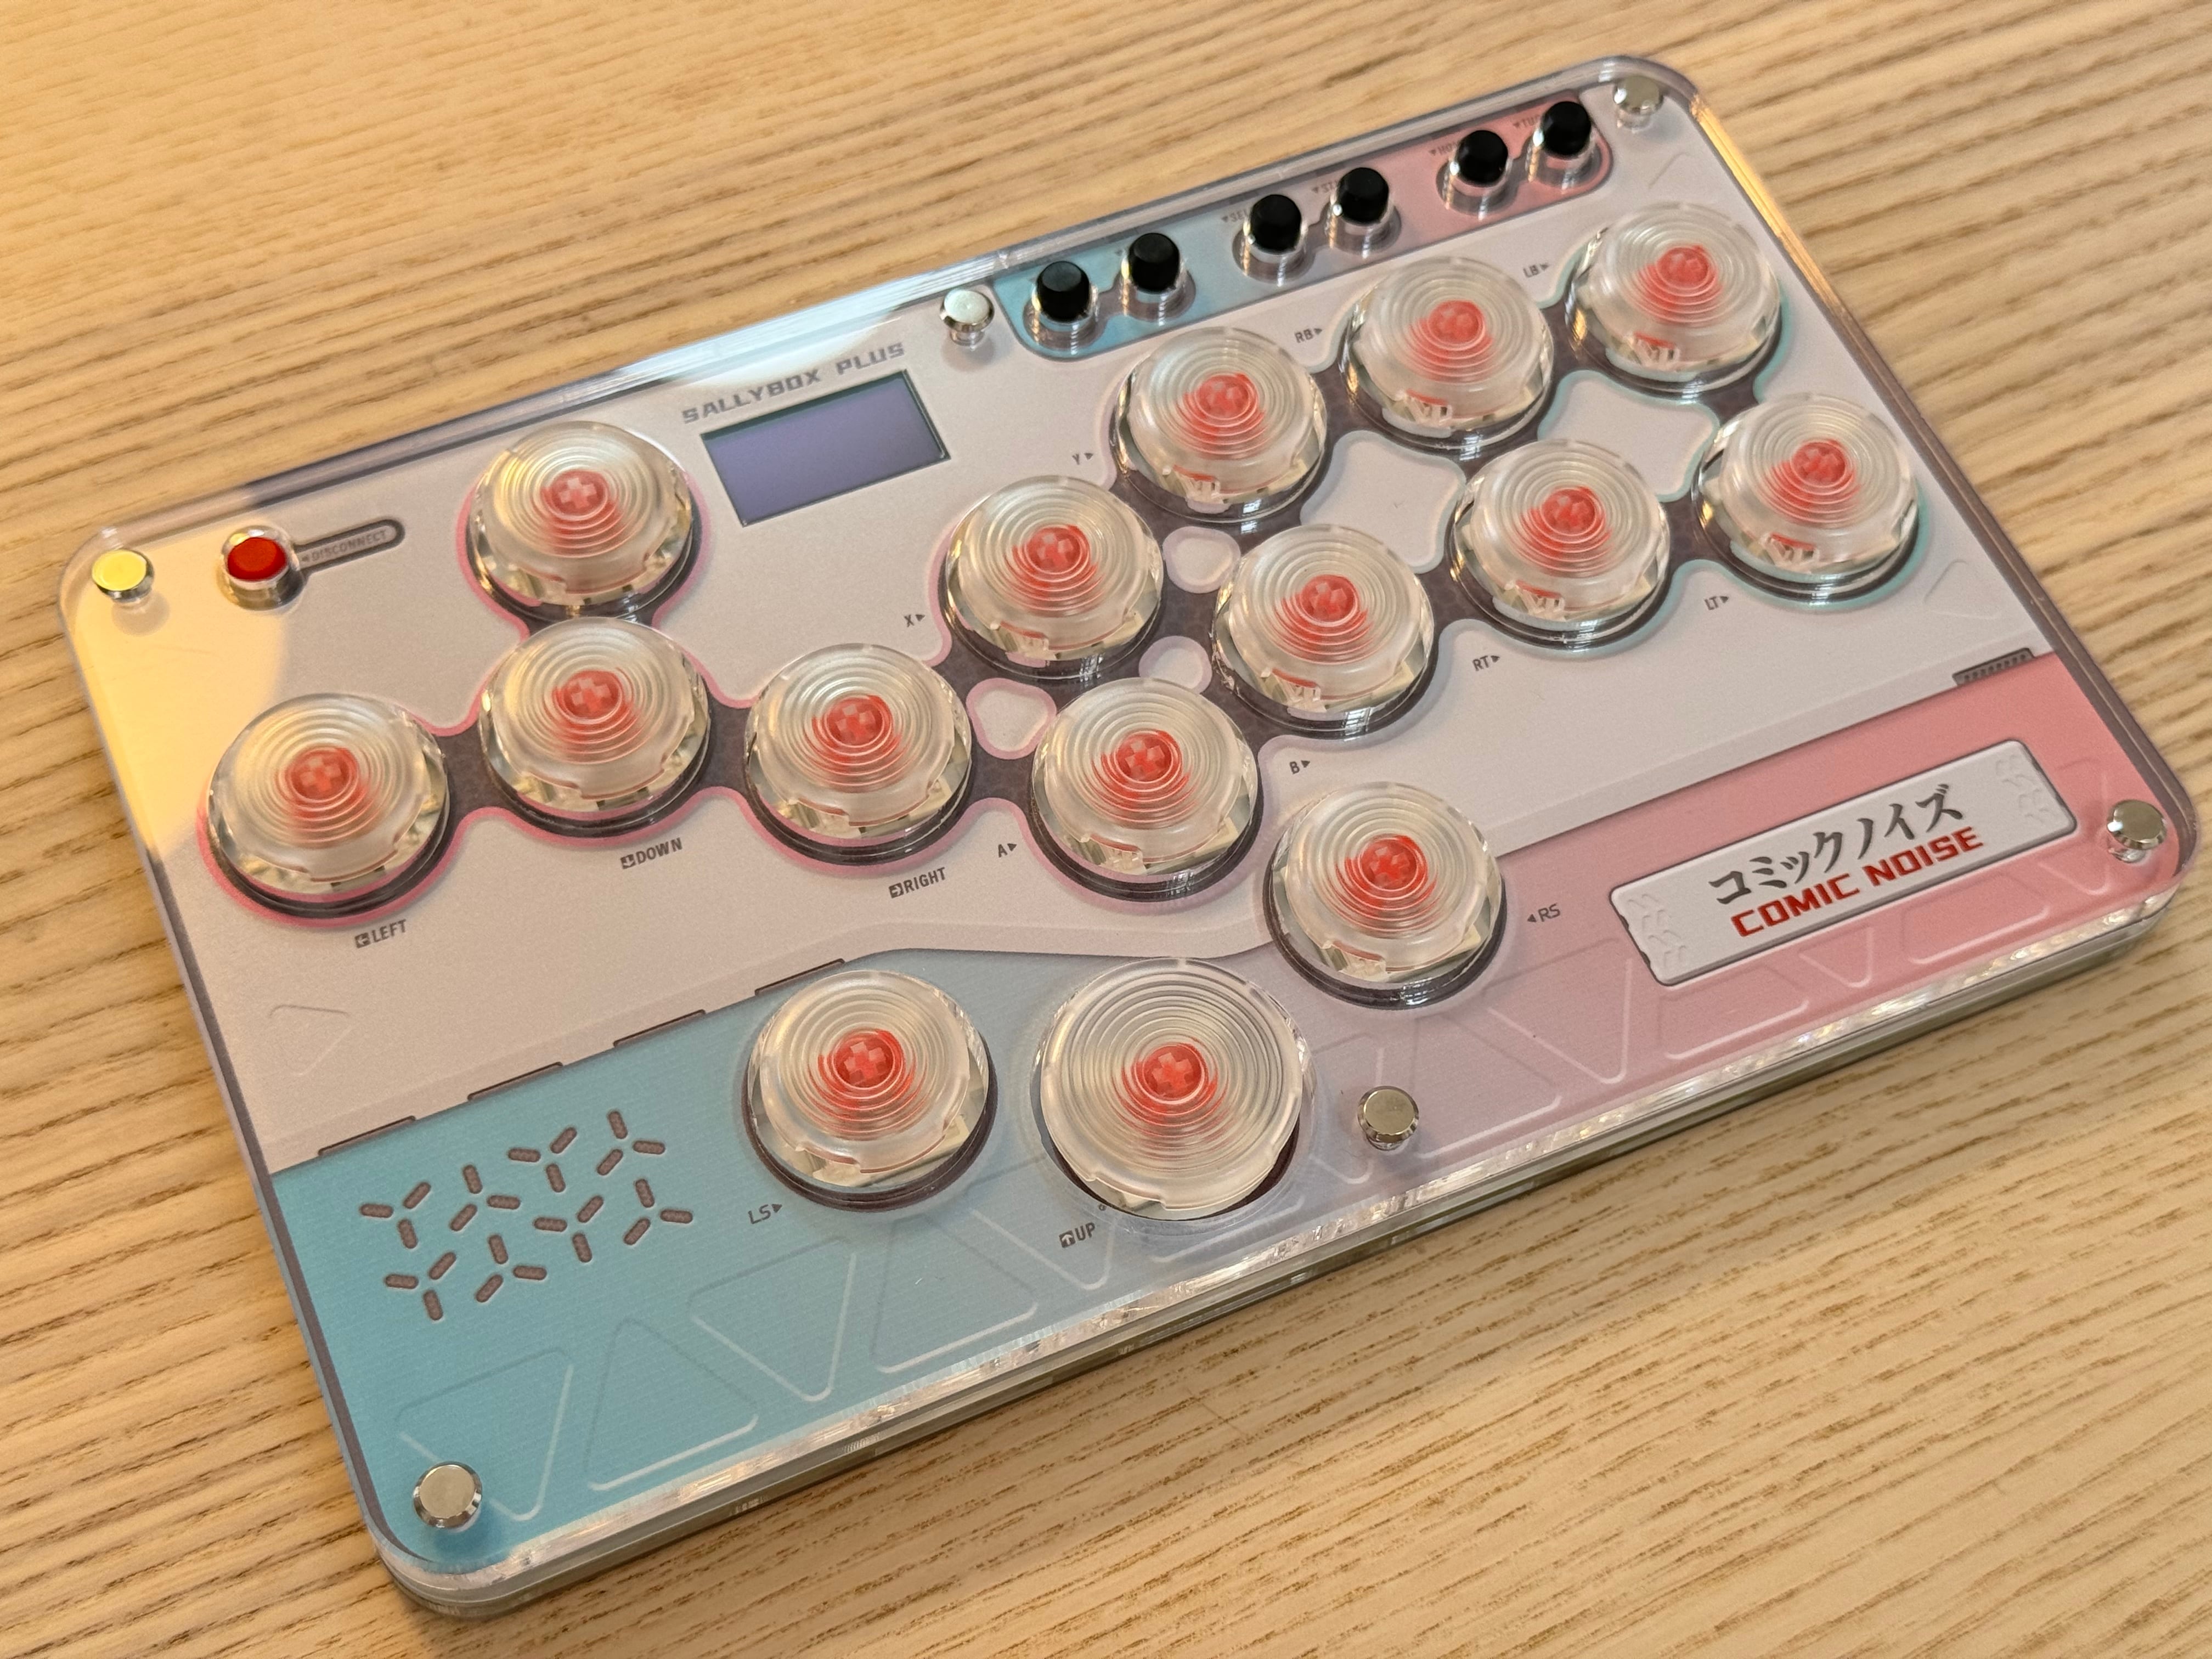 【1月上旬予約】SallyBox Plusボタン増設レバーレスコントローラー